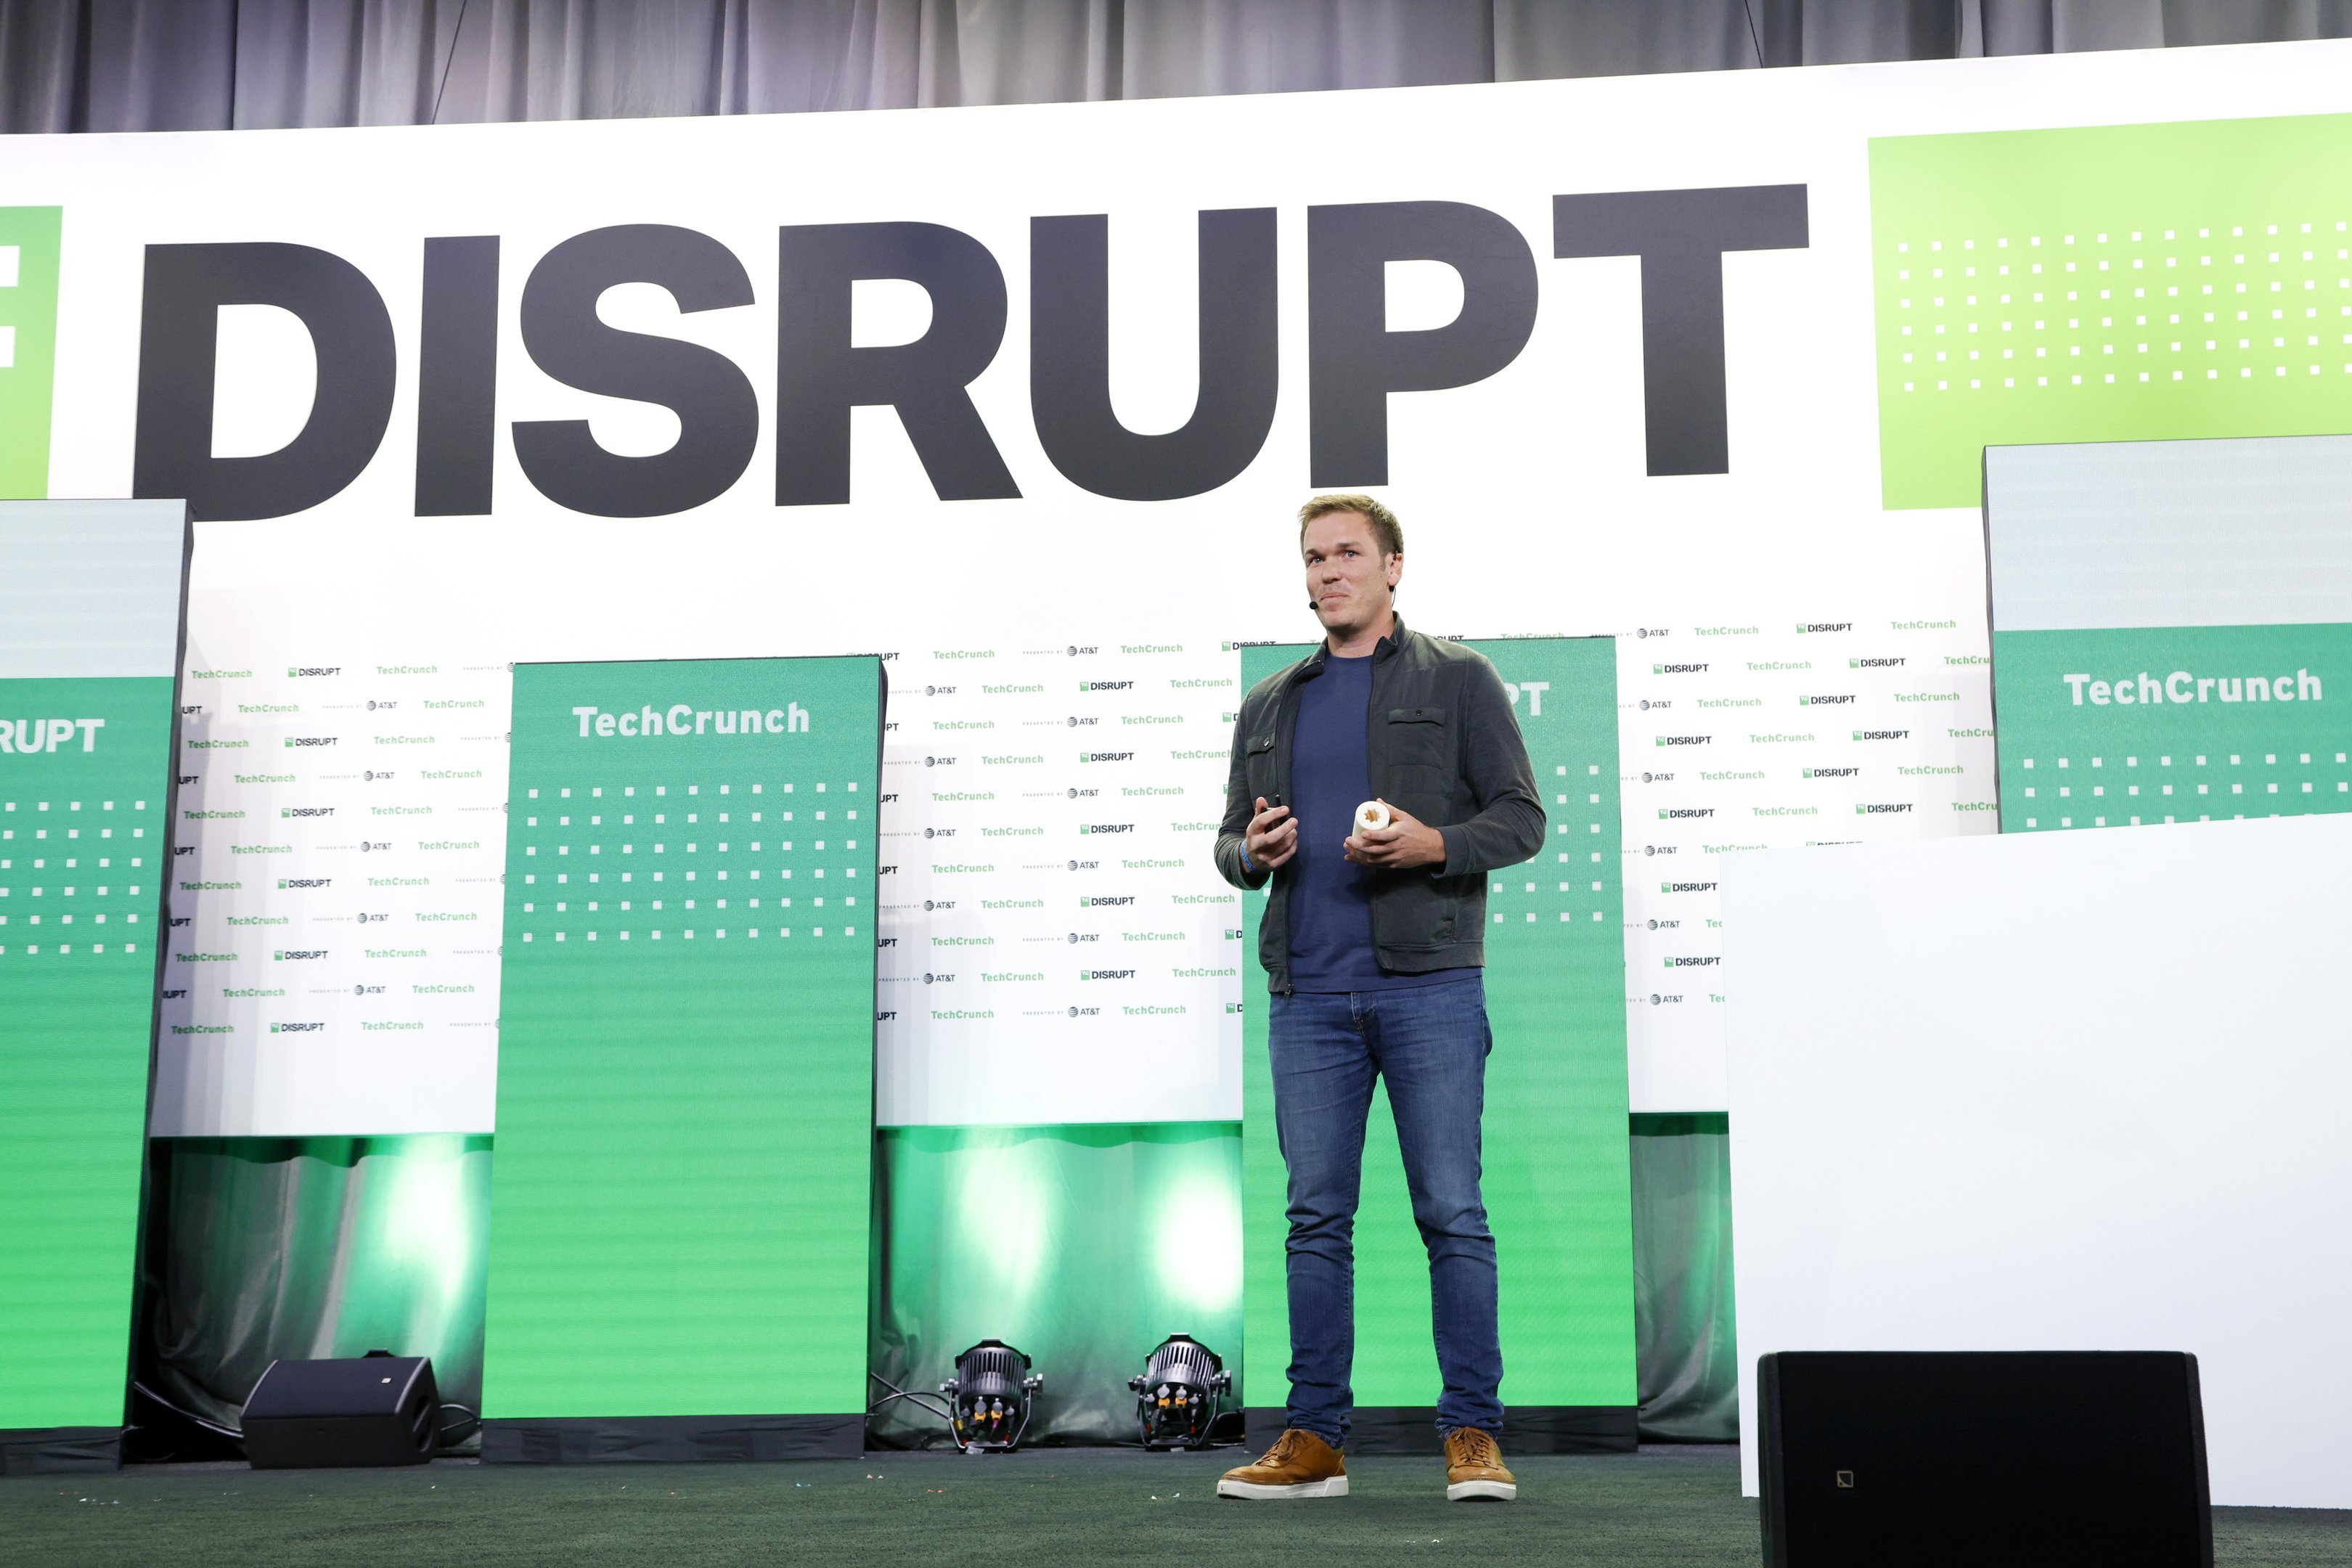 Realizada em San Francisco, a TechCrunch Disrupt é famosa por suas competições de startups e sessões de pitch, atraindo cerca de 10.000 participantes e lançando empresas de sucesso como Dropbox e Trello.